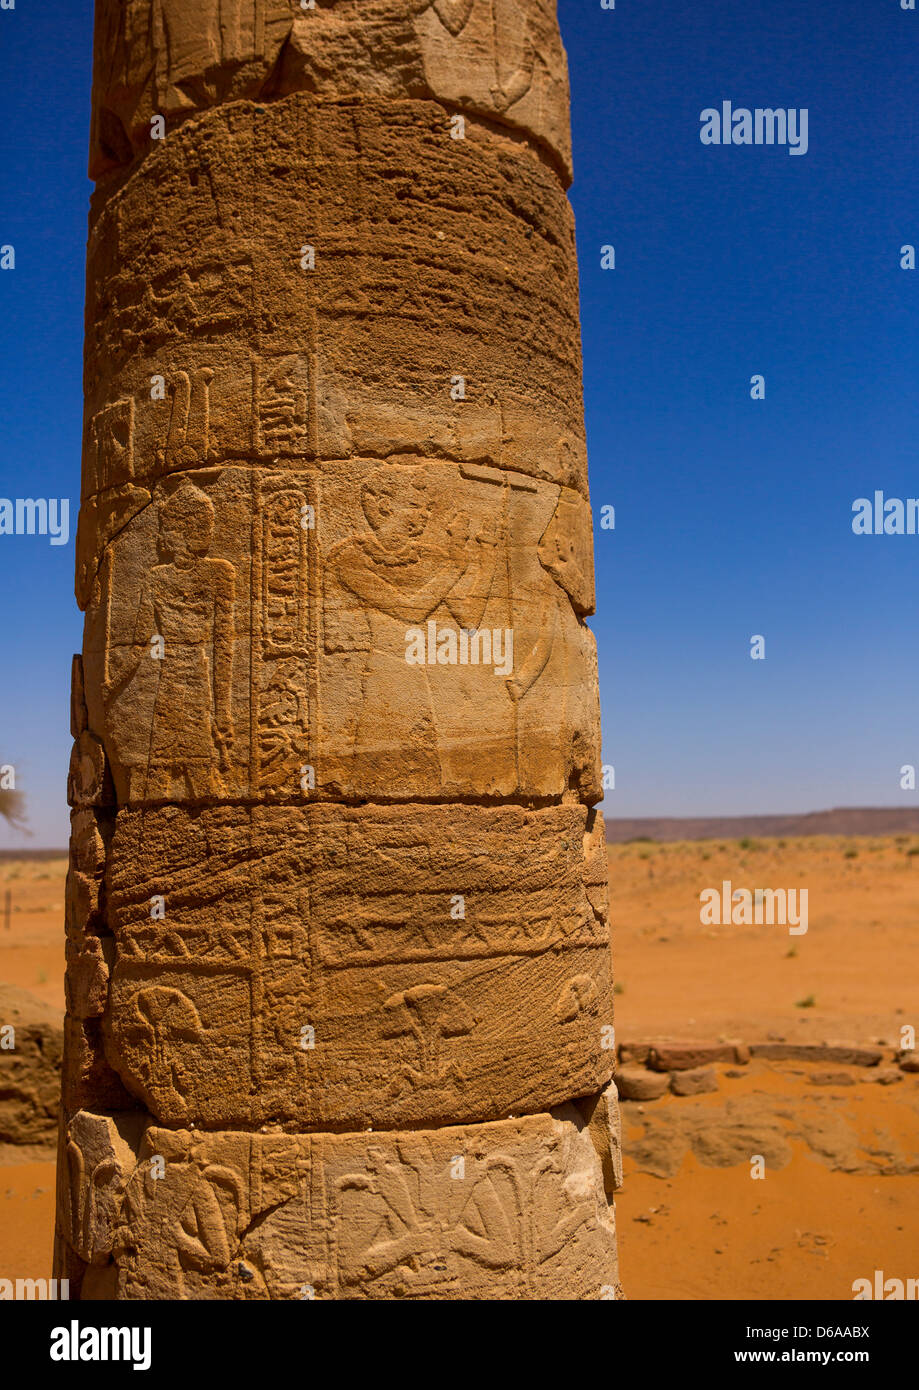 Amon Tempio colonne, Naga Sito, Sudan Foto Stock